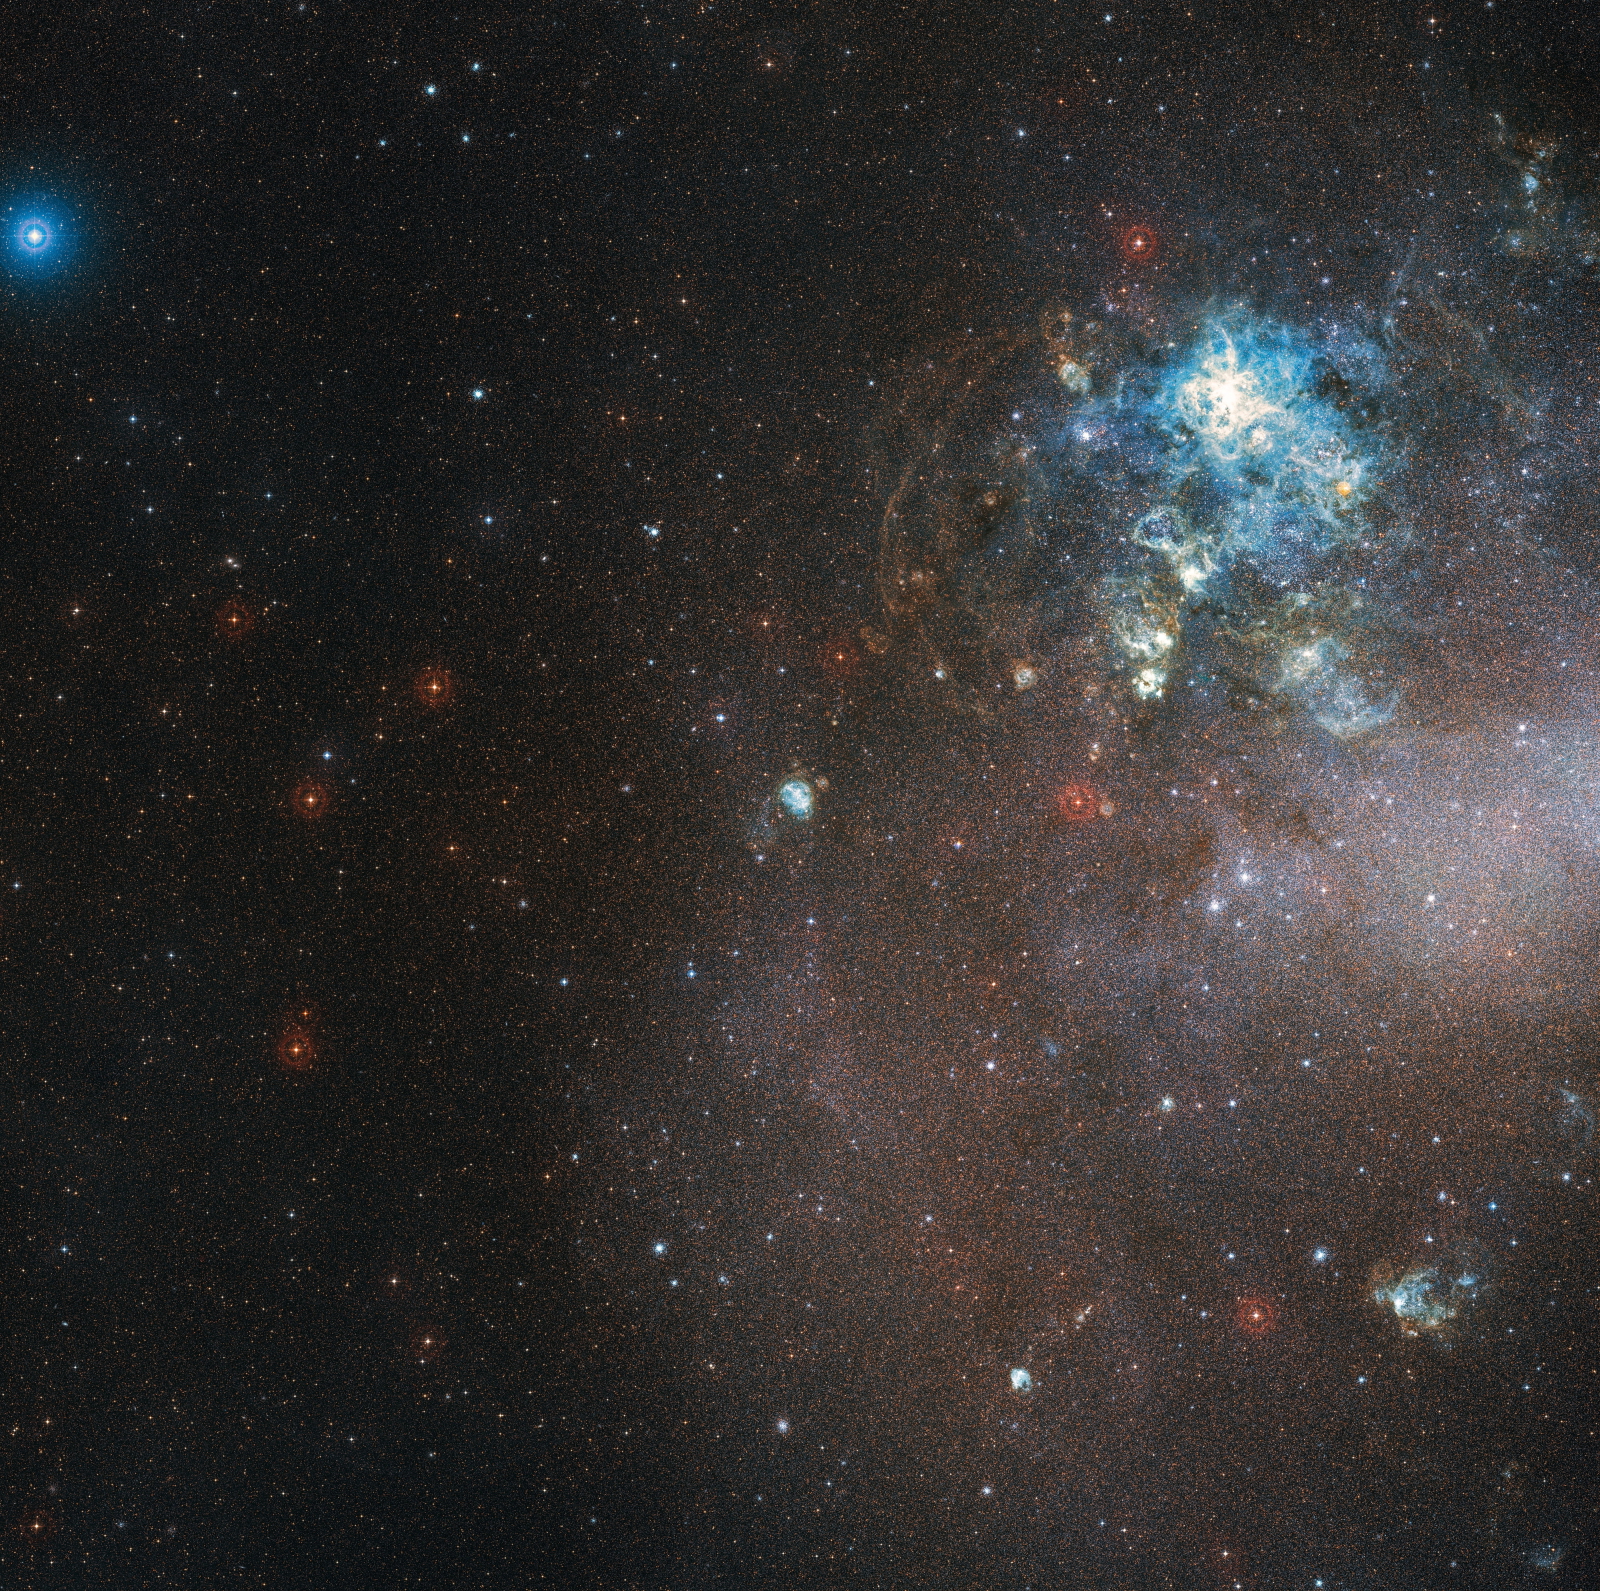 Zdjęcie wykonane przez Europejskie Obserwatorium Południowe pokazuje olśniewający obszar nowo tworzących się gwiazd w Wielkim Obłoku Magellana. Fot. PAP/EPA/ESO/Digitized Sky Survey 2 / HANDOUT